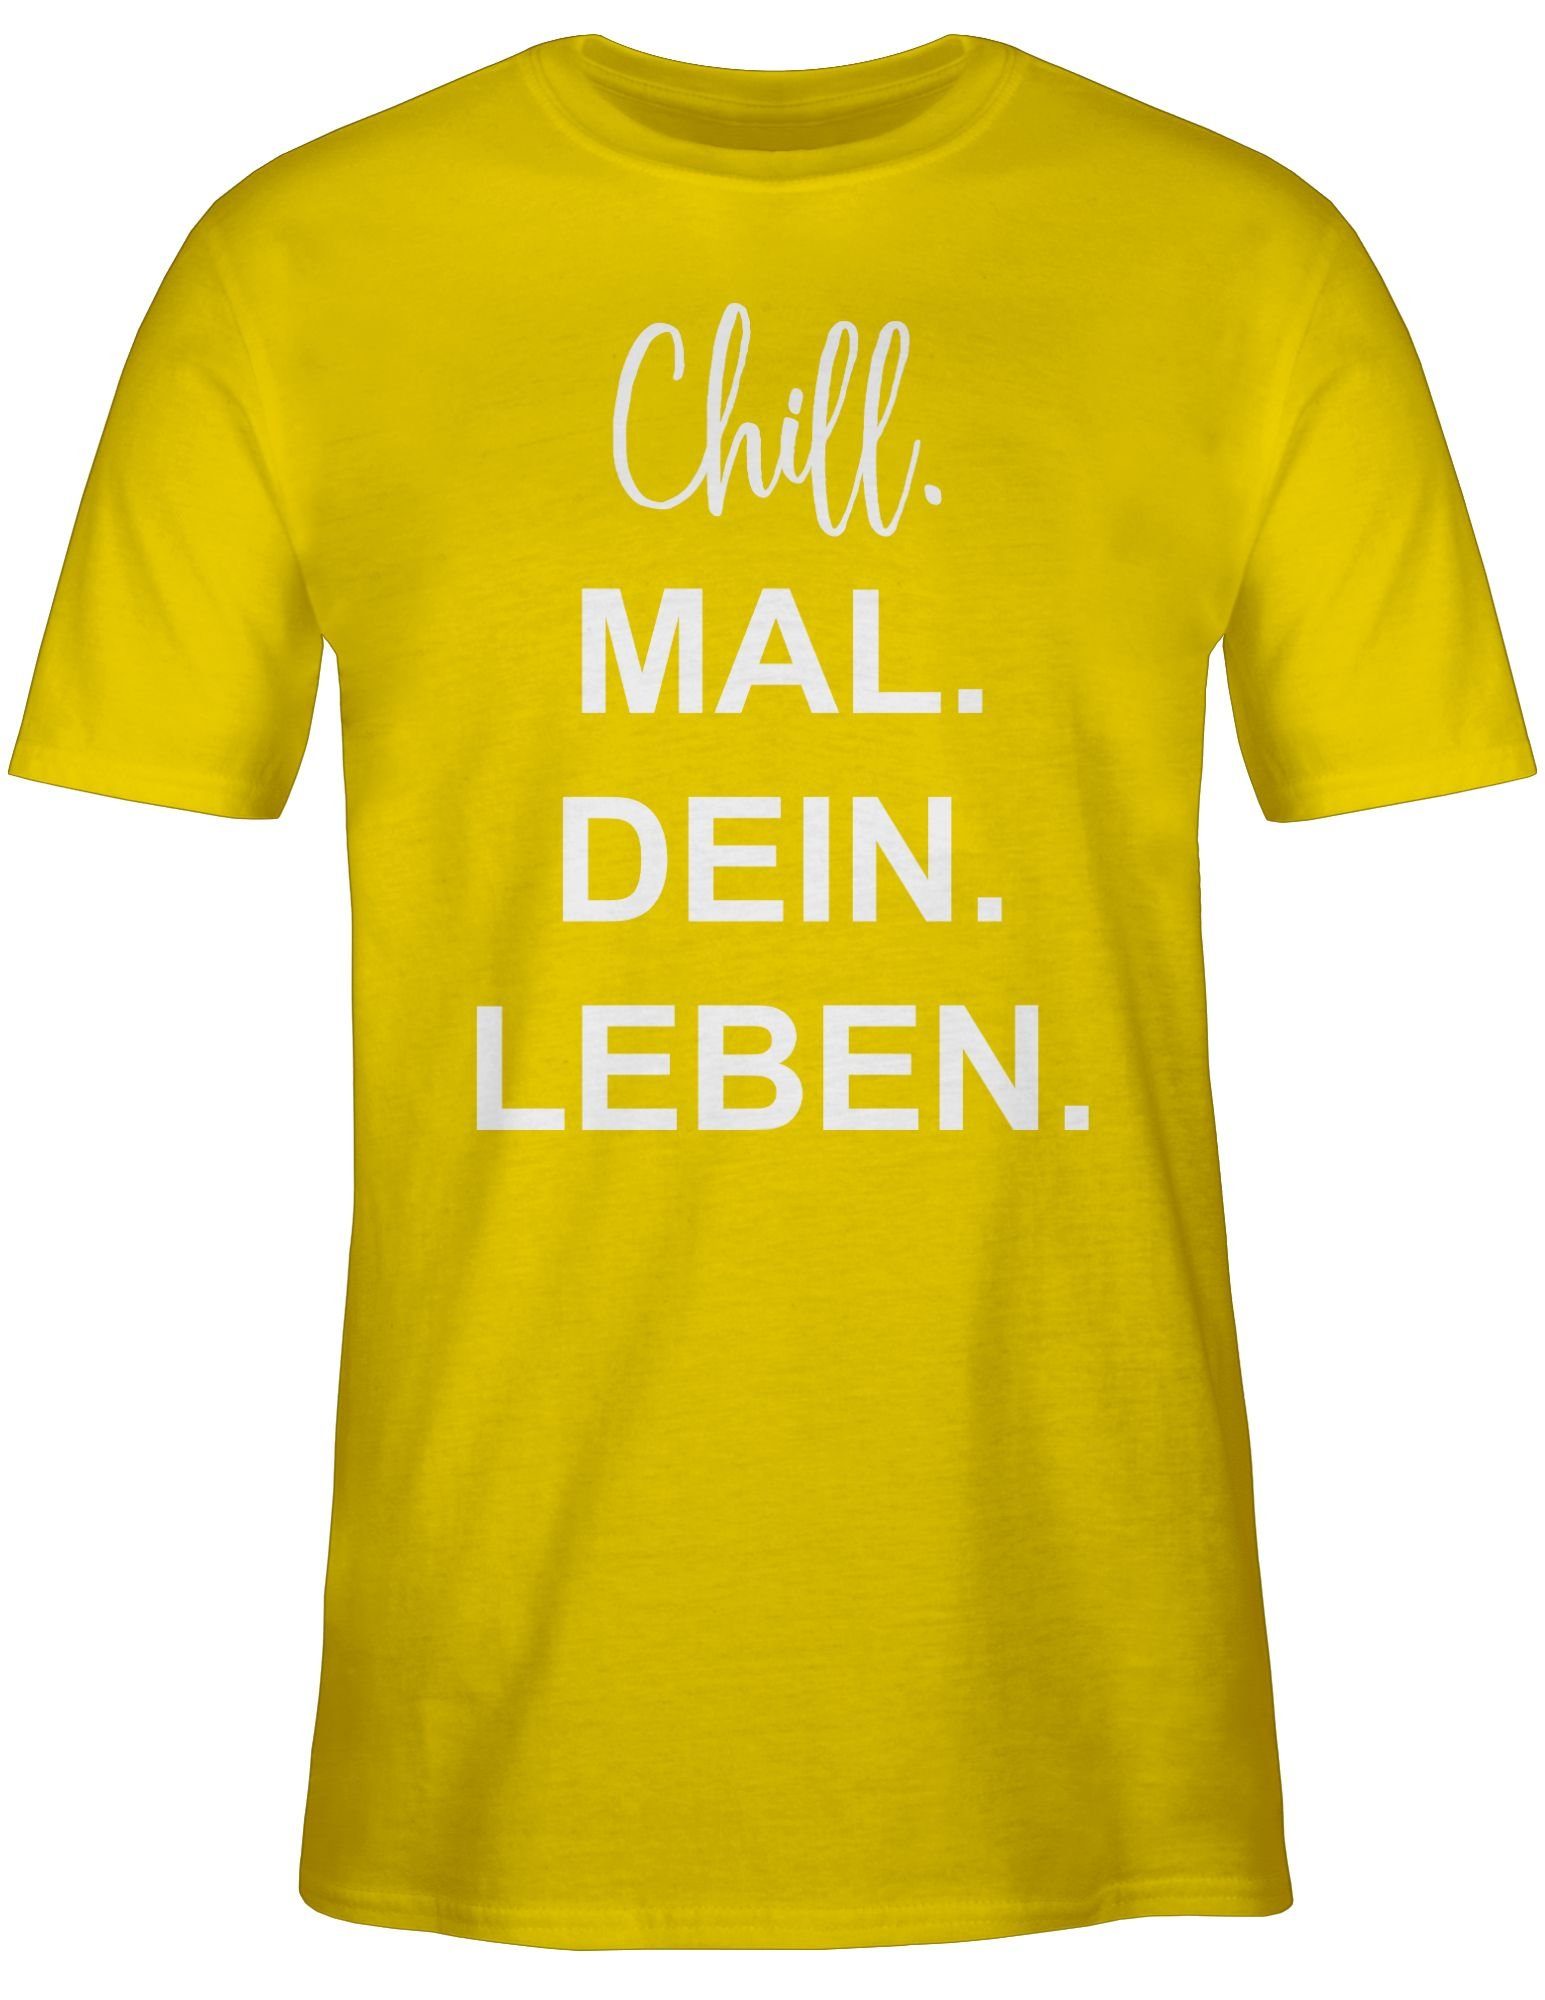 Mal Chill Leben Sprüche Statement 3 Dein Gelb Shirtracer T-Shirt